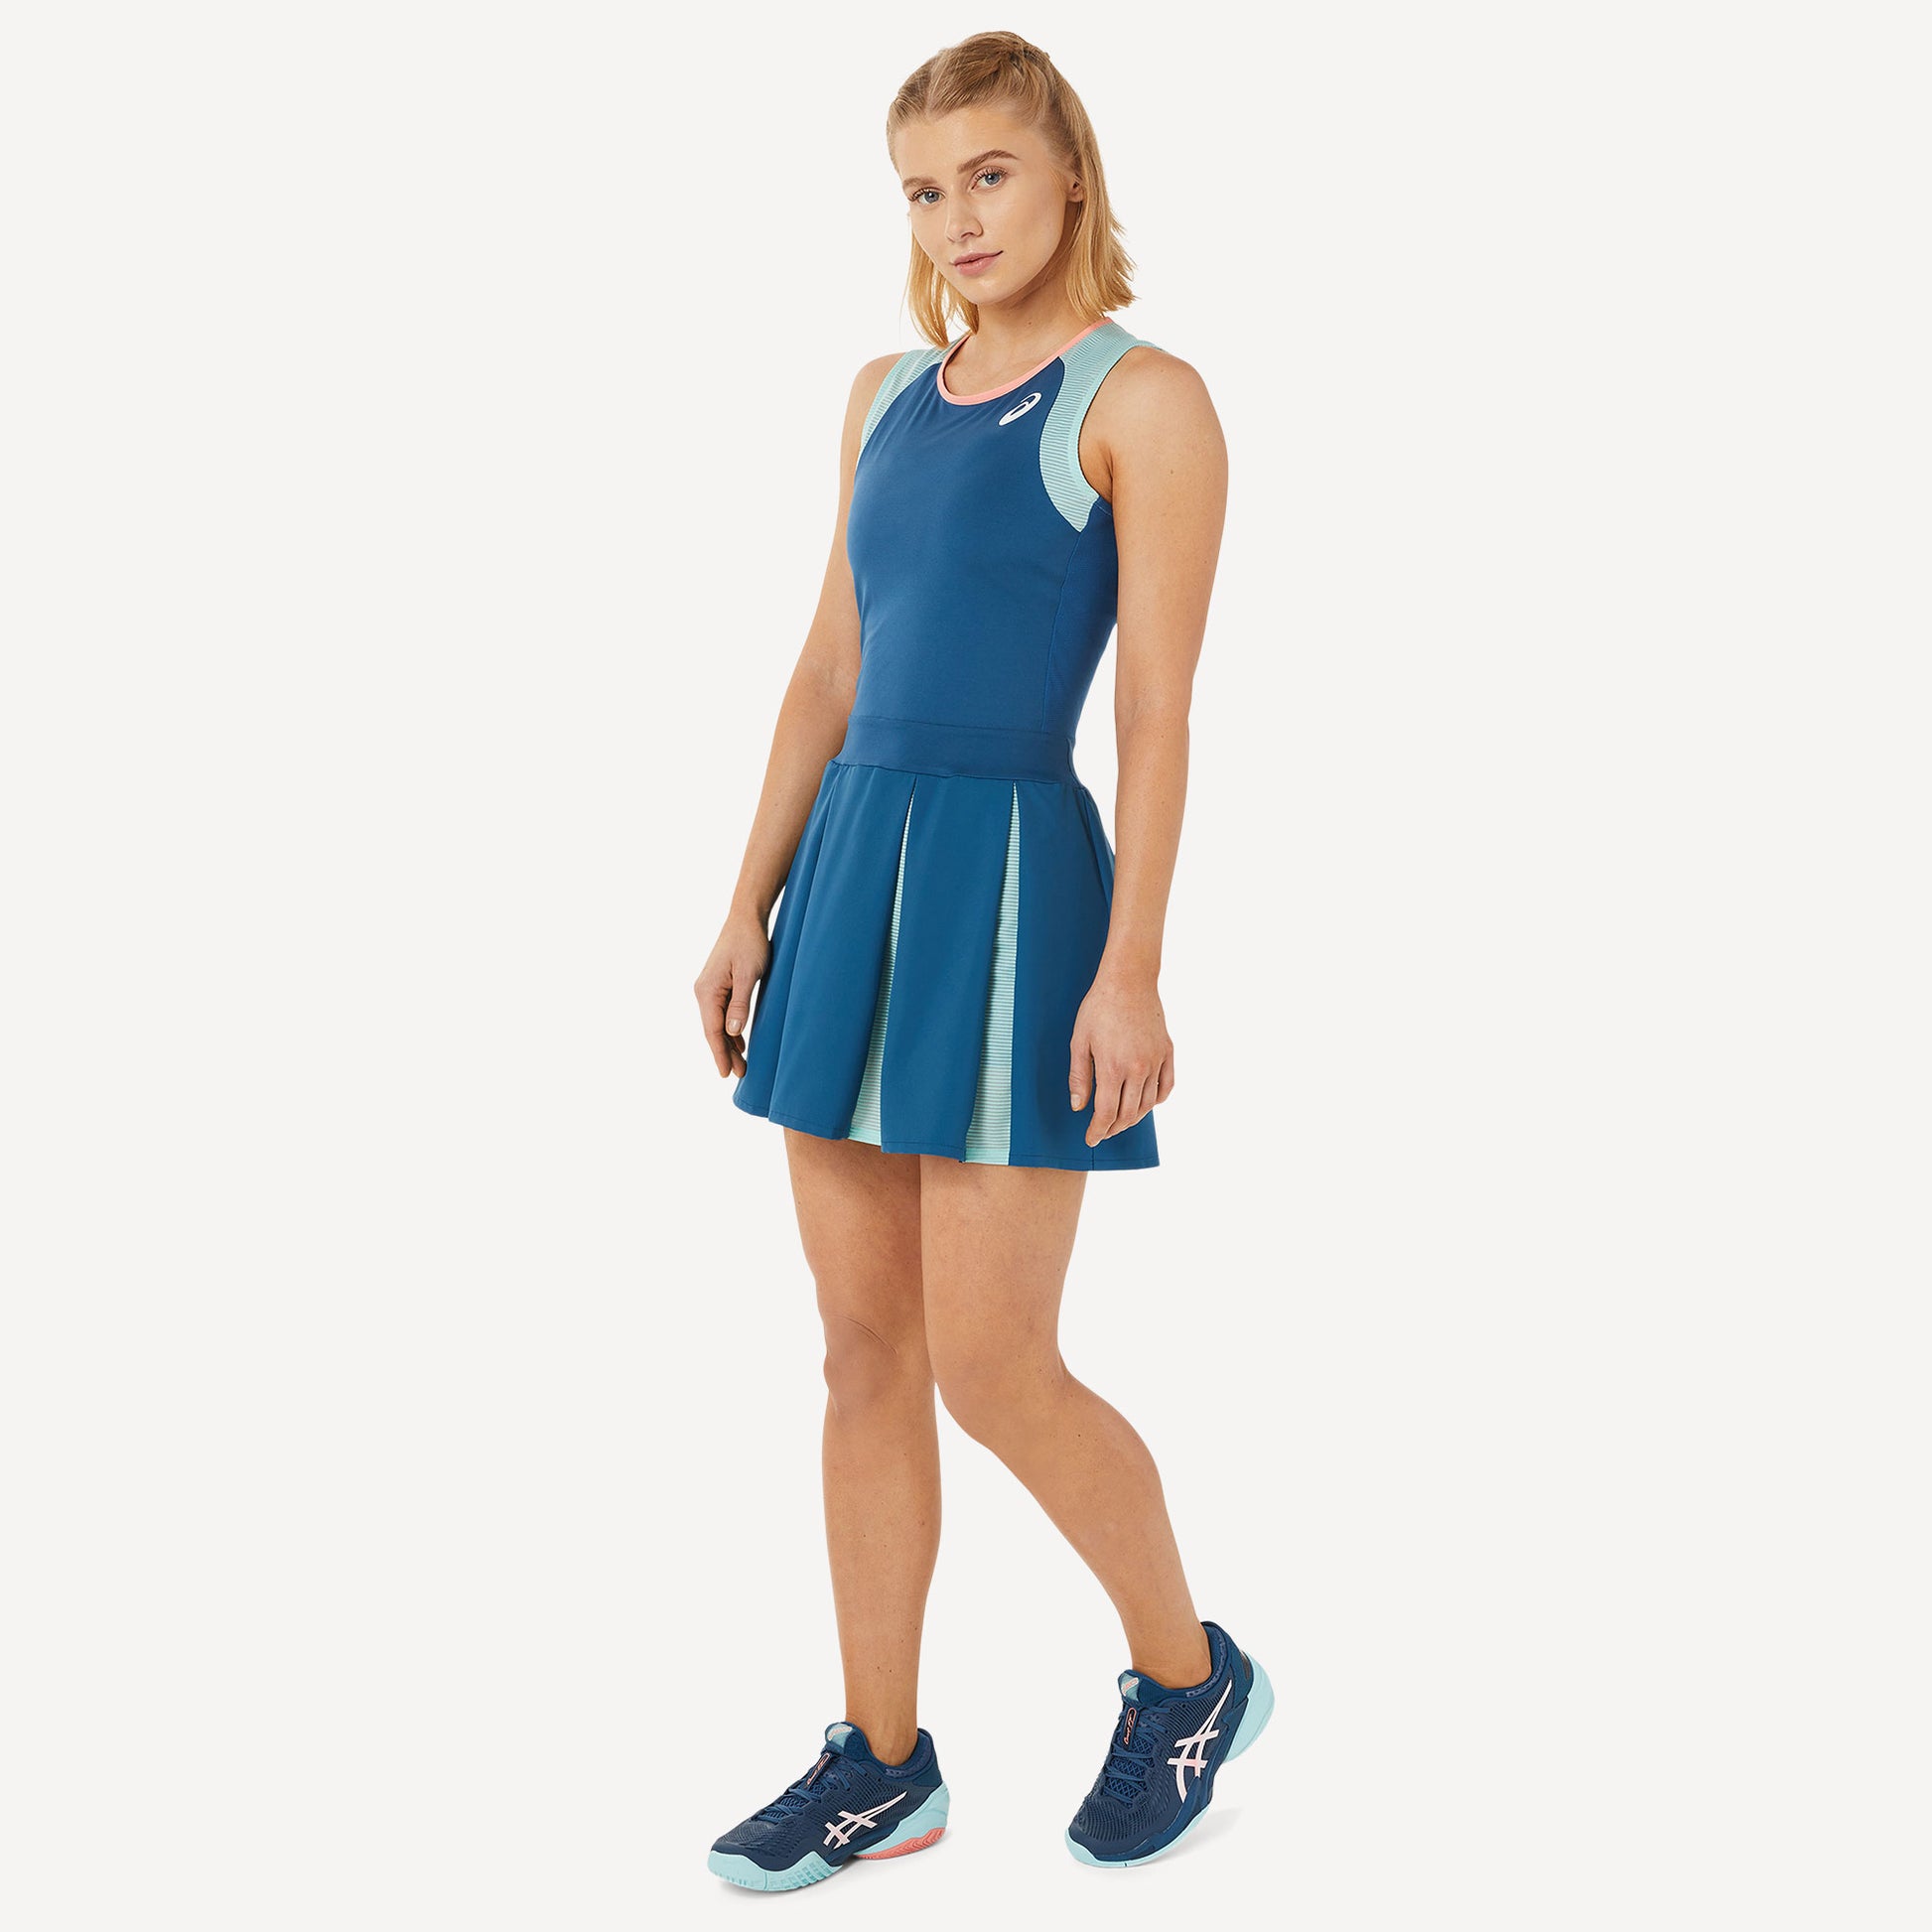 ASICS Match Women's Tennis Dress Blue (2)